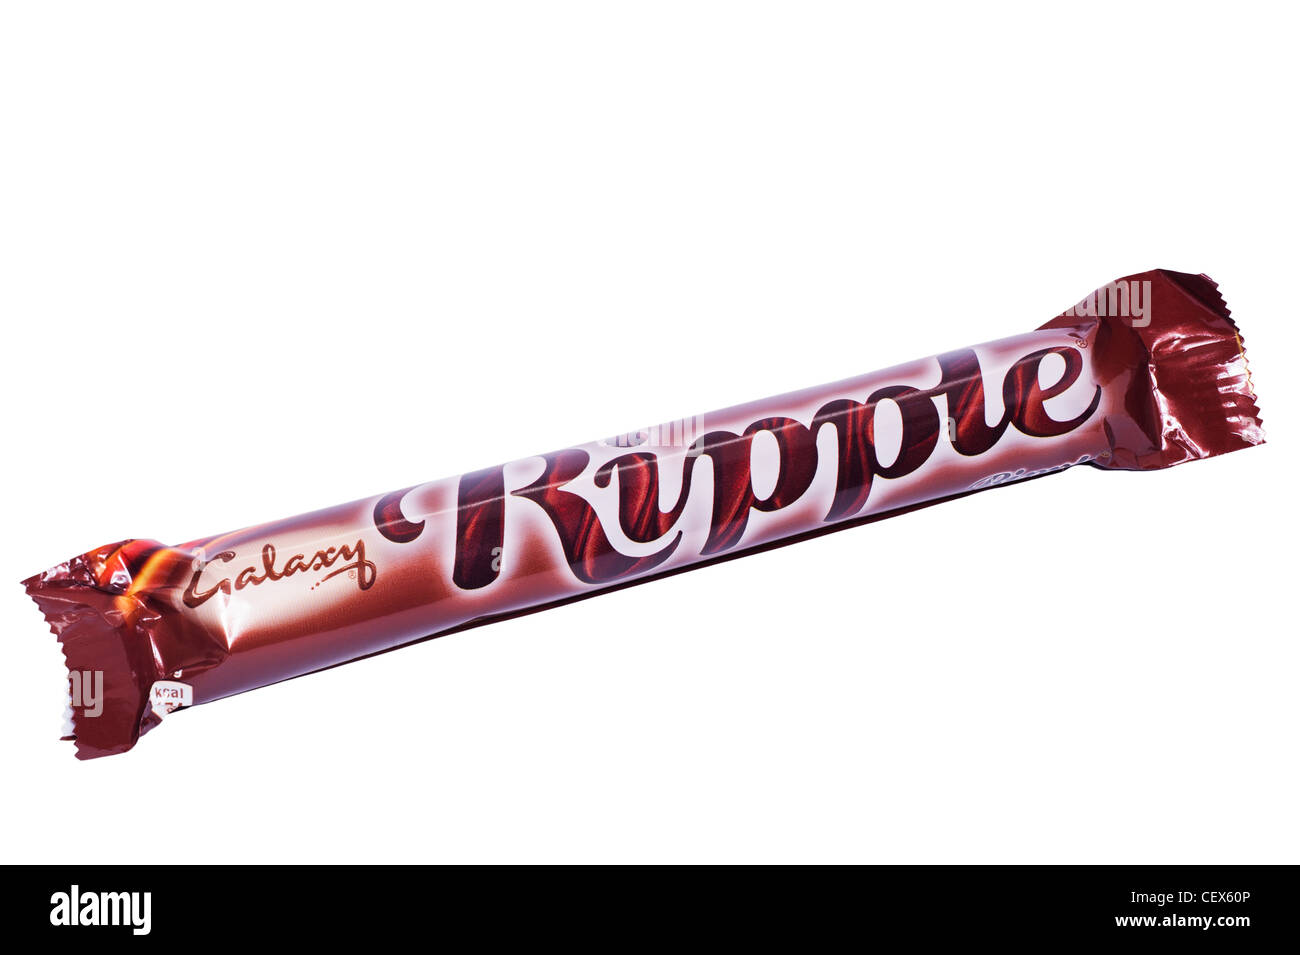 Eine Galaxie Milchschokolade Ripple Bar auf weißem Hintergrund Stockfoto